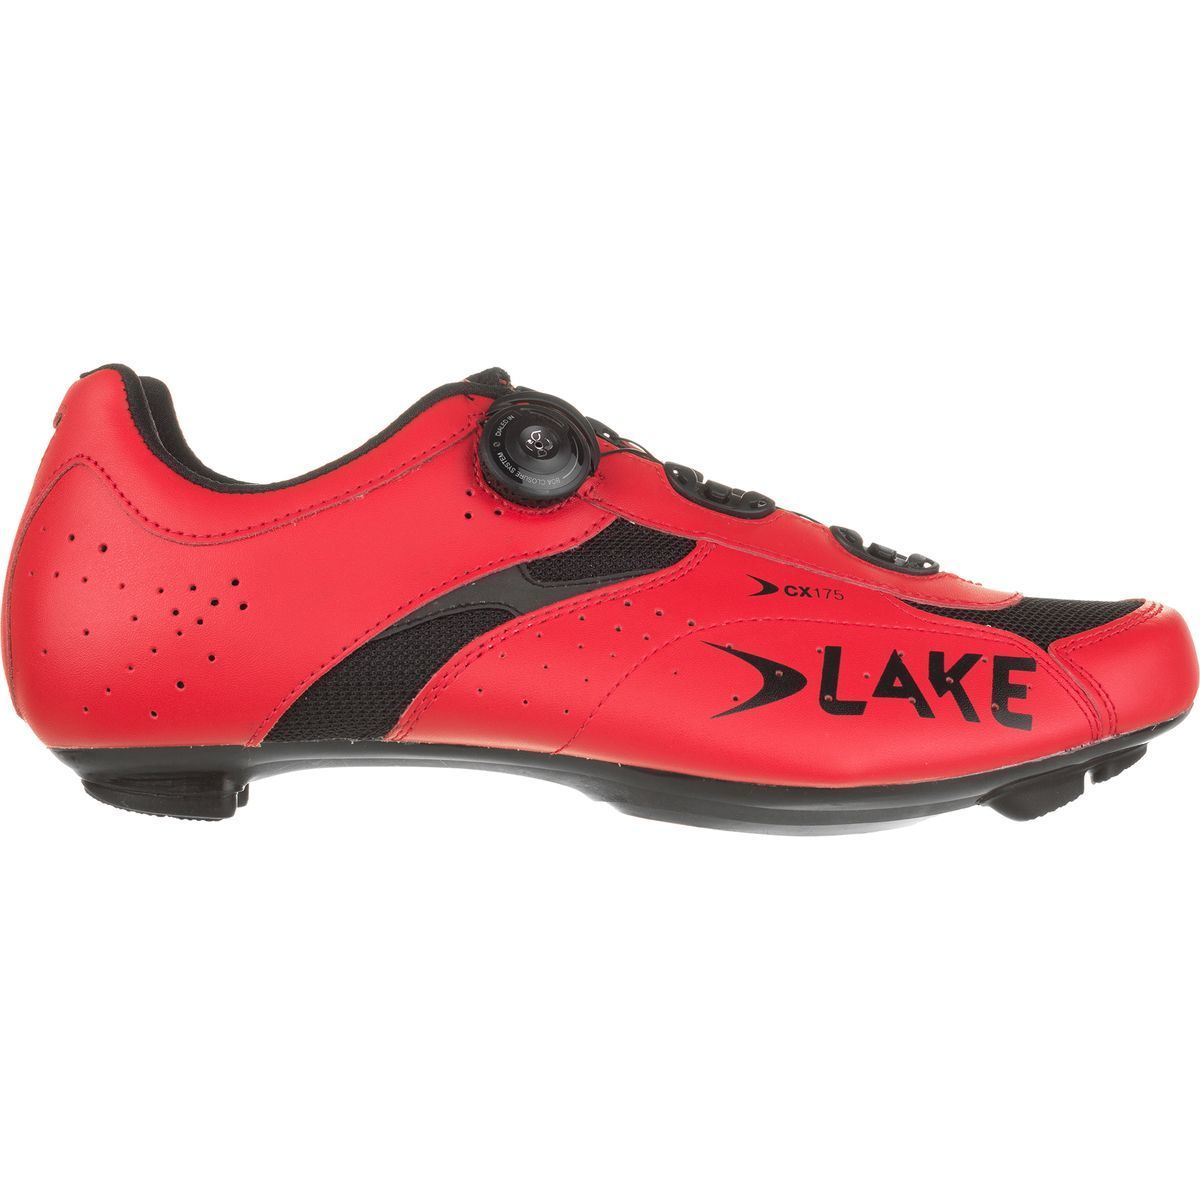 Lake CX175 Shoes Men's